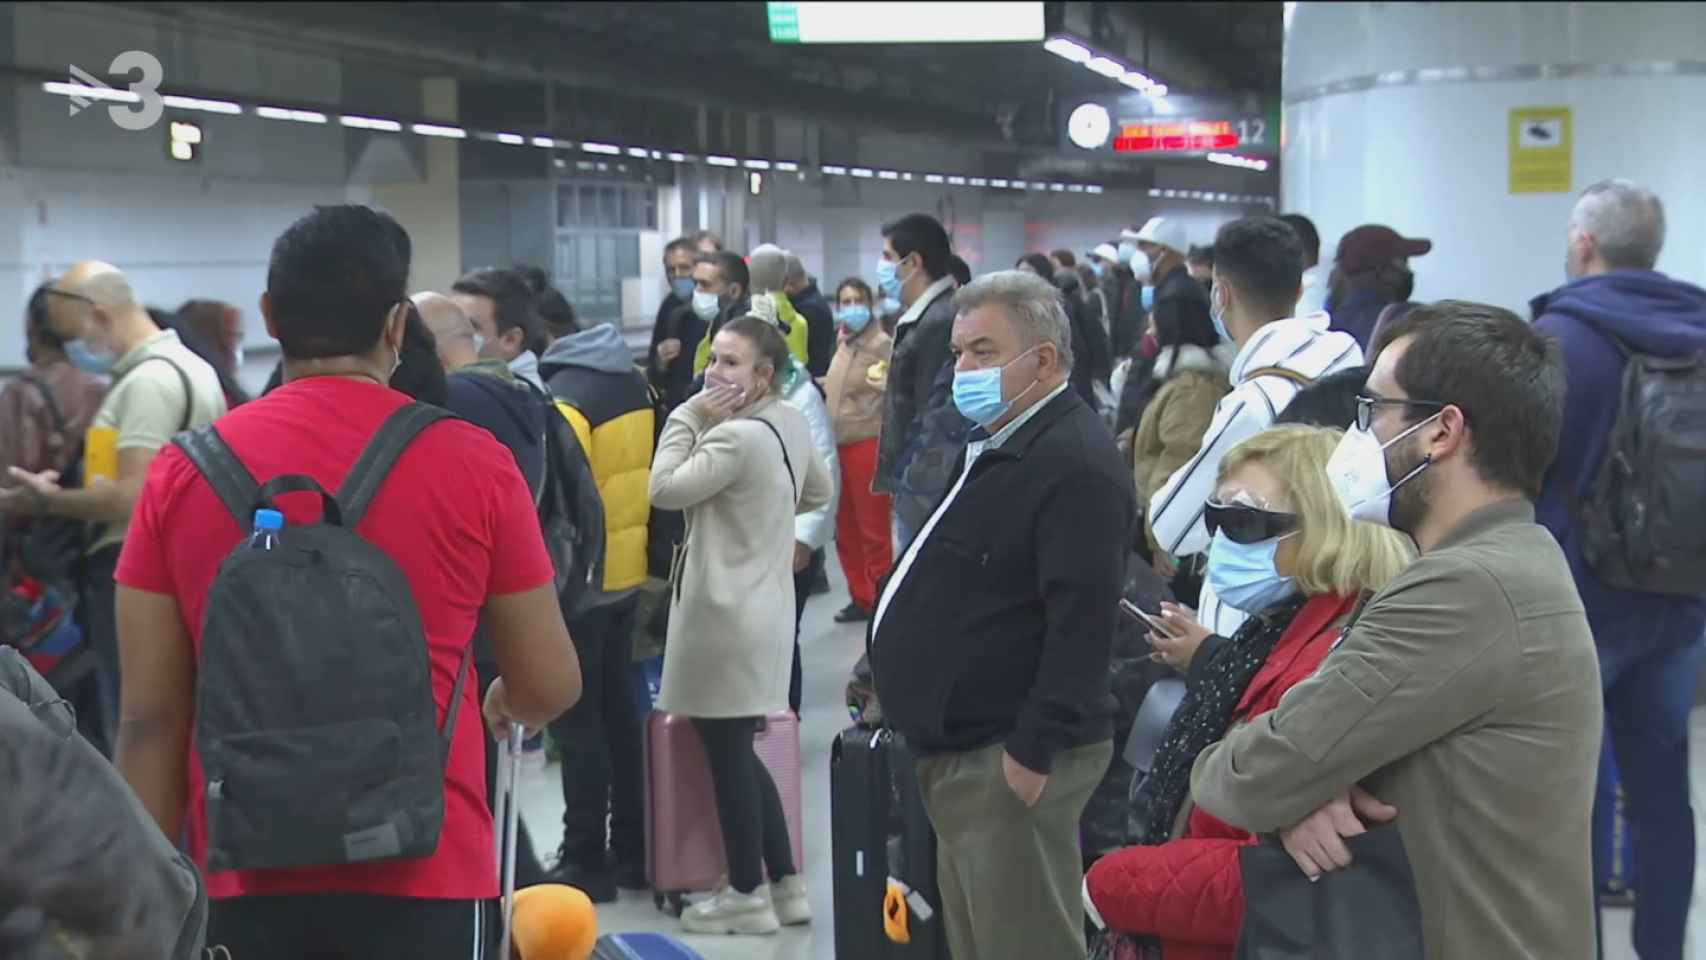 Uno de los andenes de Barcelona Sants, abarrotado de pasajeros que esperan un tren / TV3